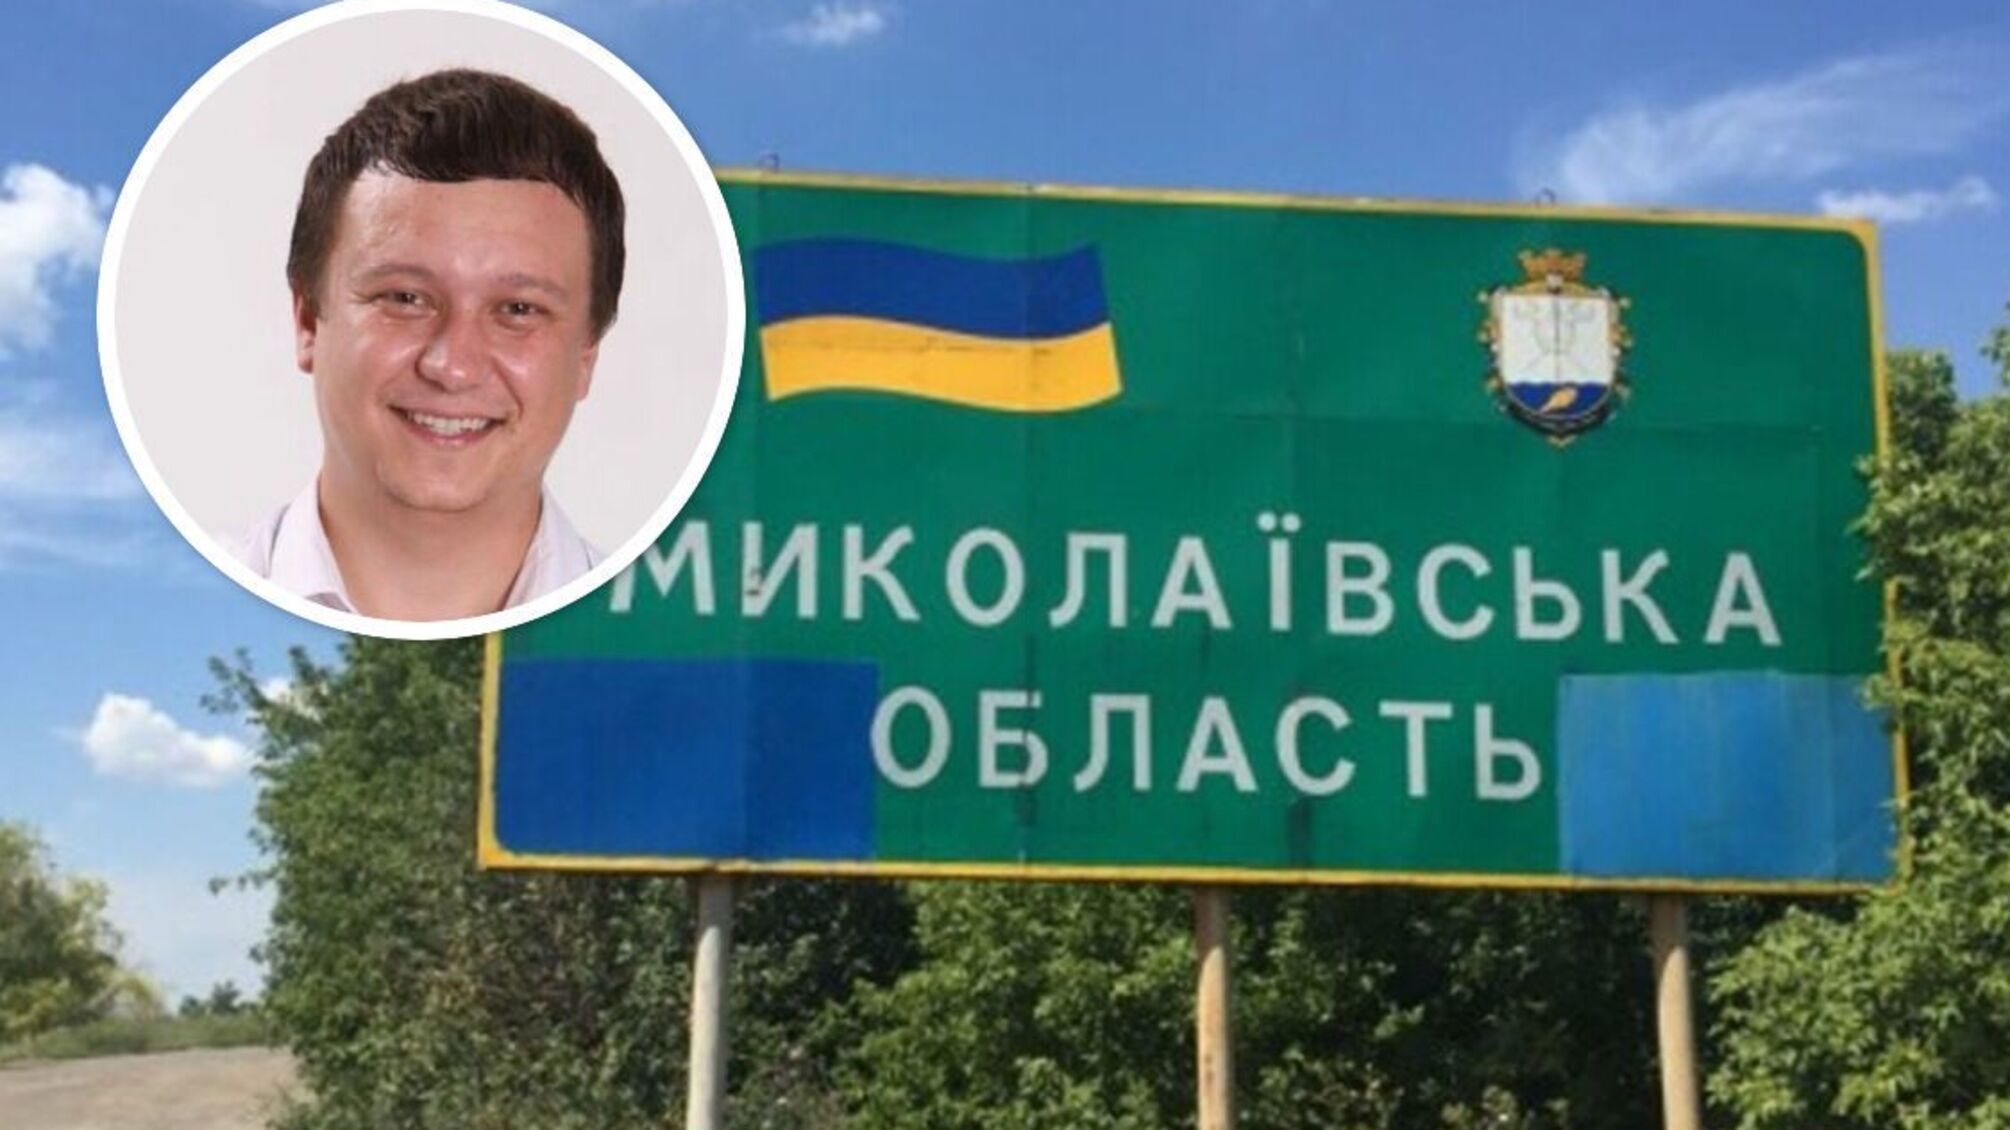 Вознесенск в Николаевской области - ВСУ сообщили о задержании местного чиновника